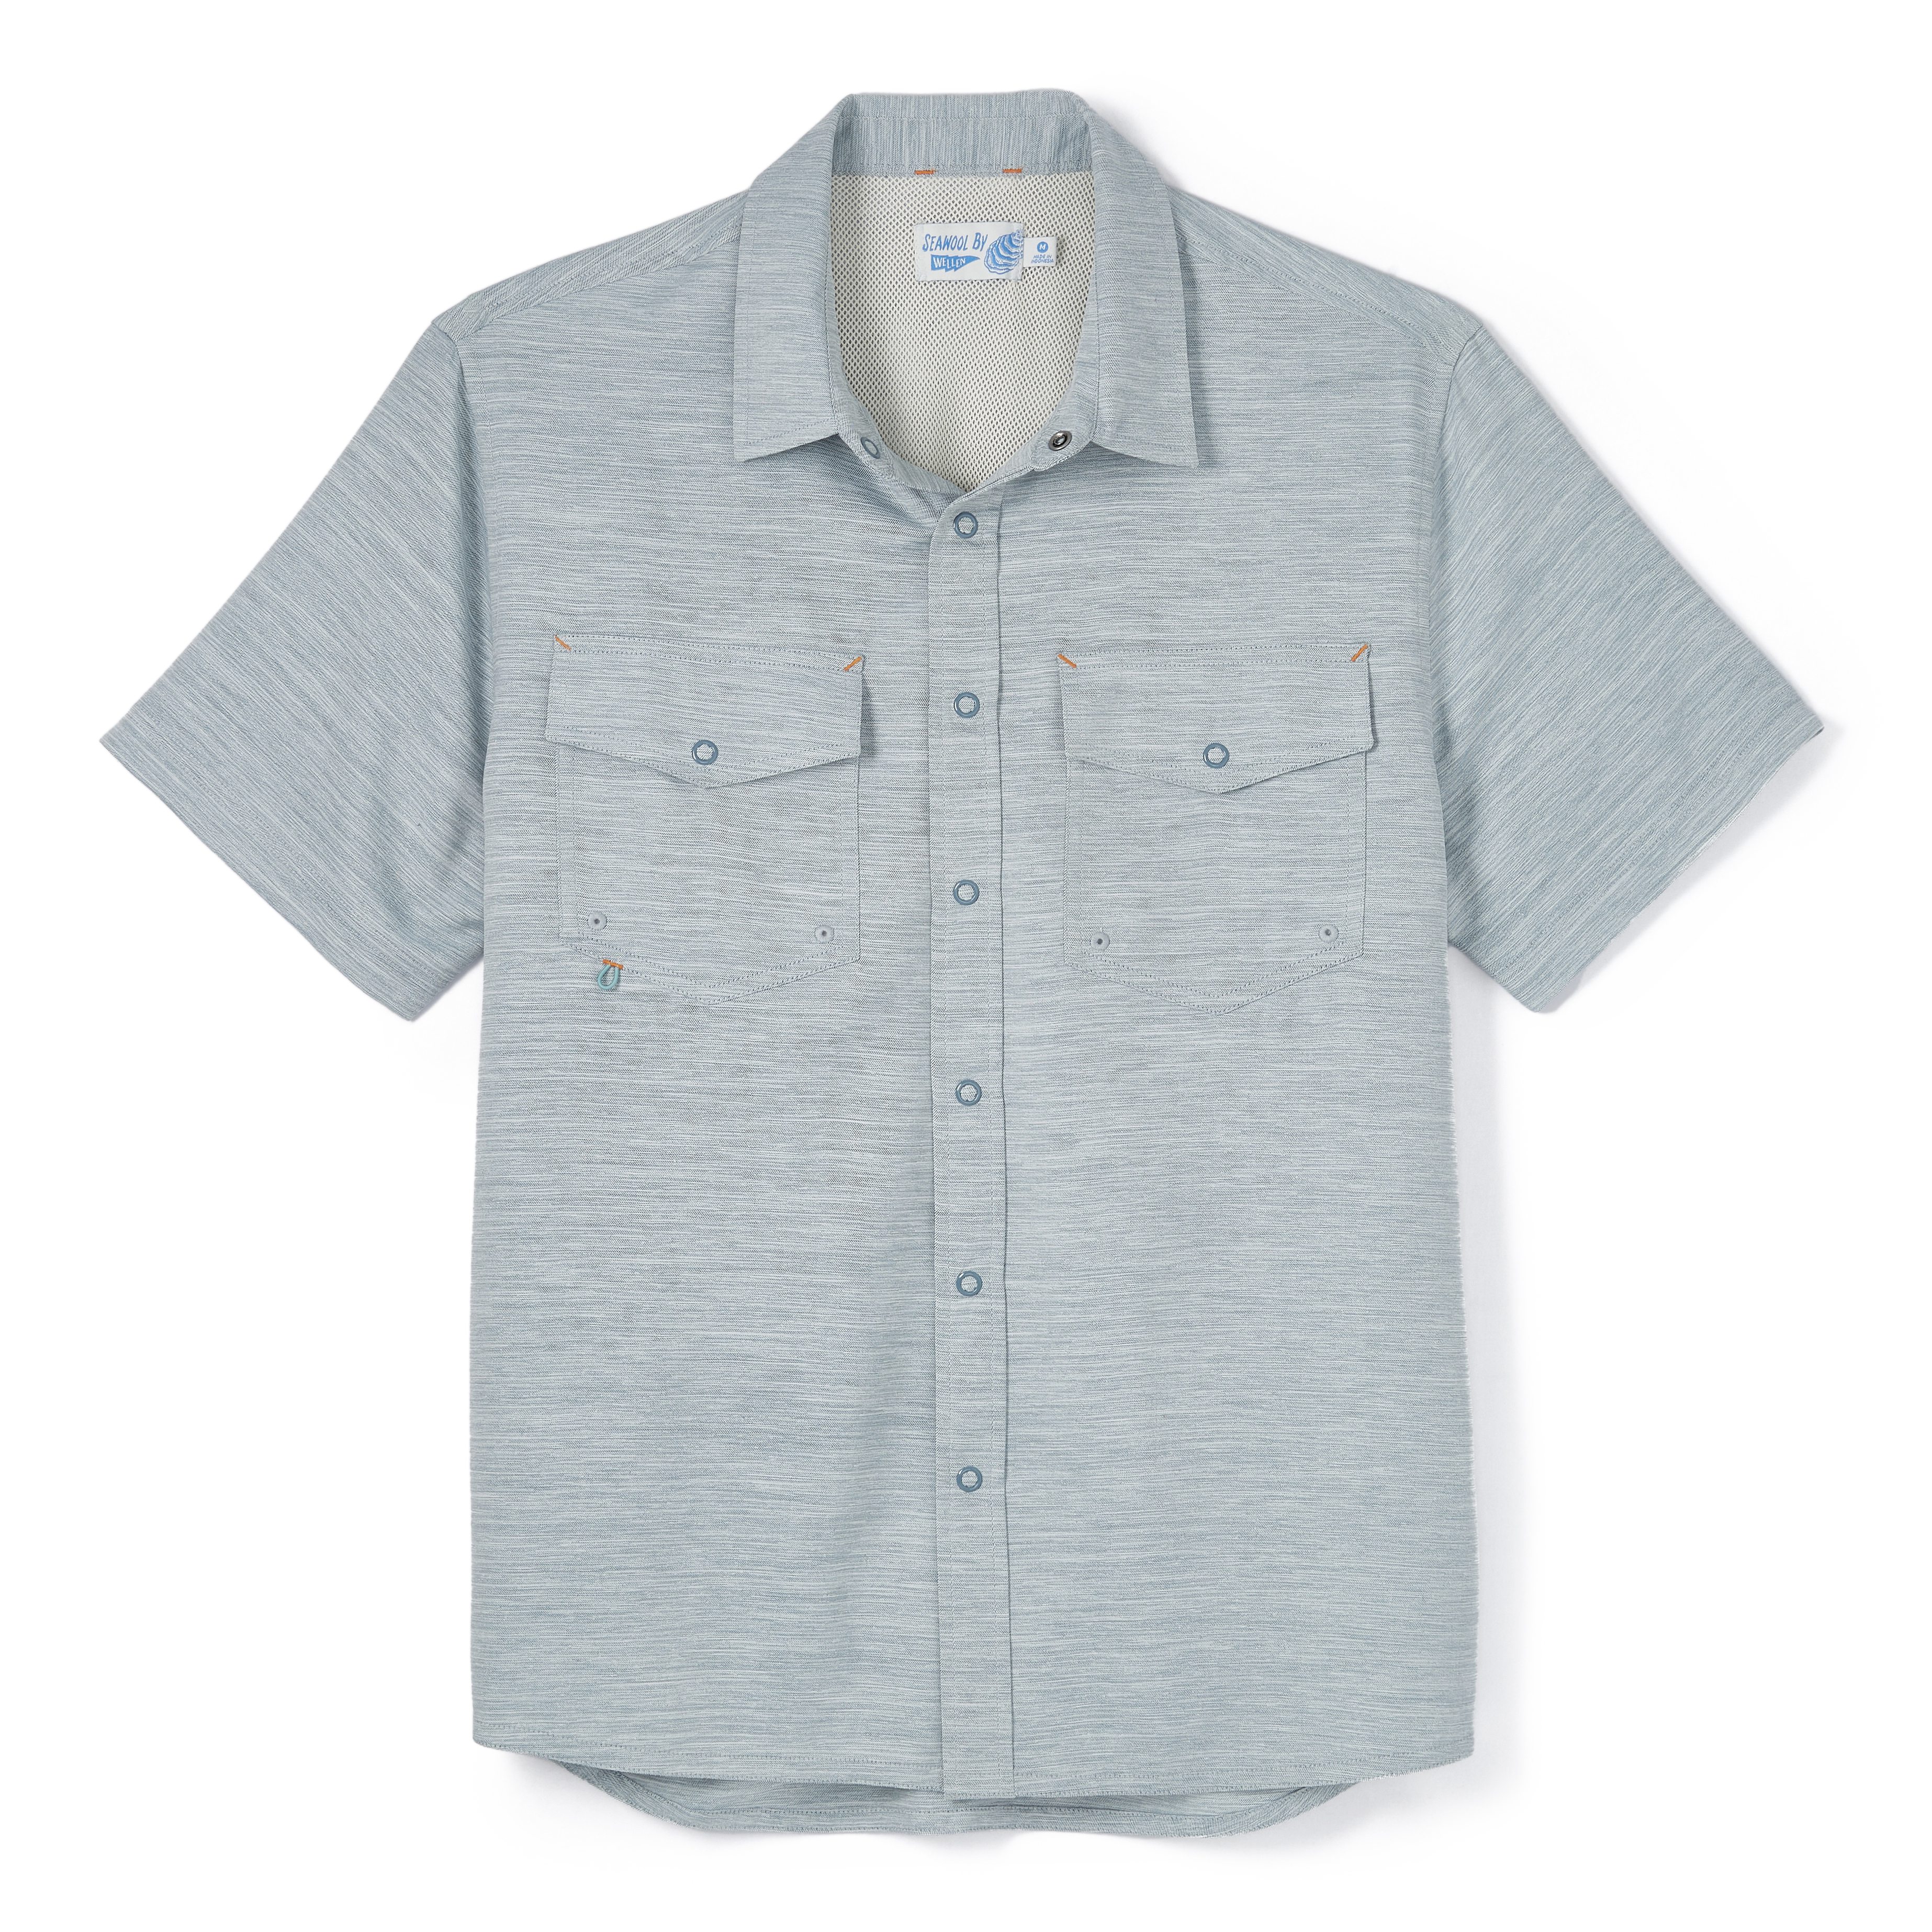 Wellen Seawool UPF Short Sleeve Shirt - Marled Blue | Short Sleeve